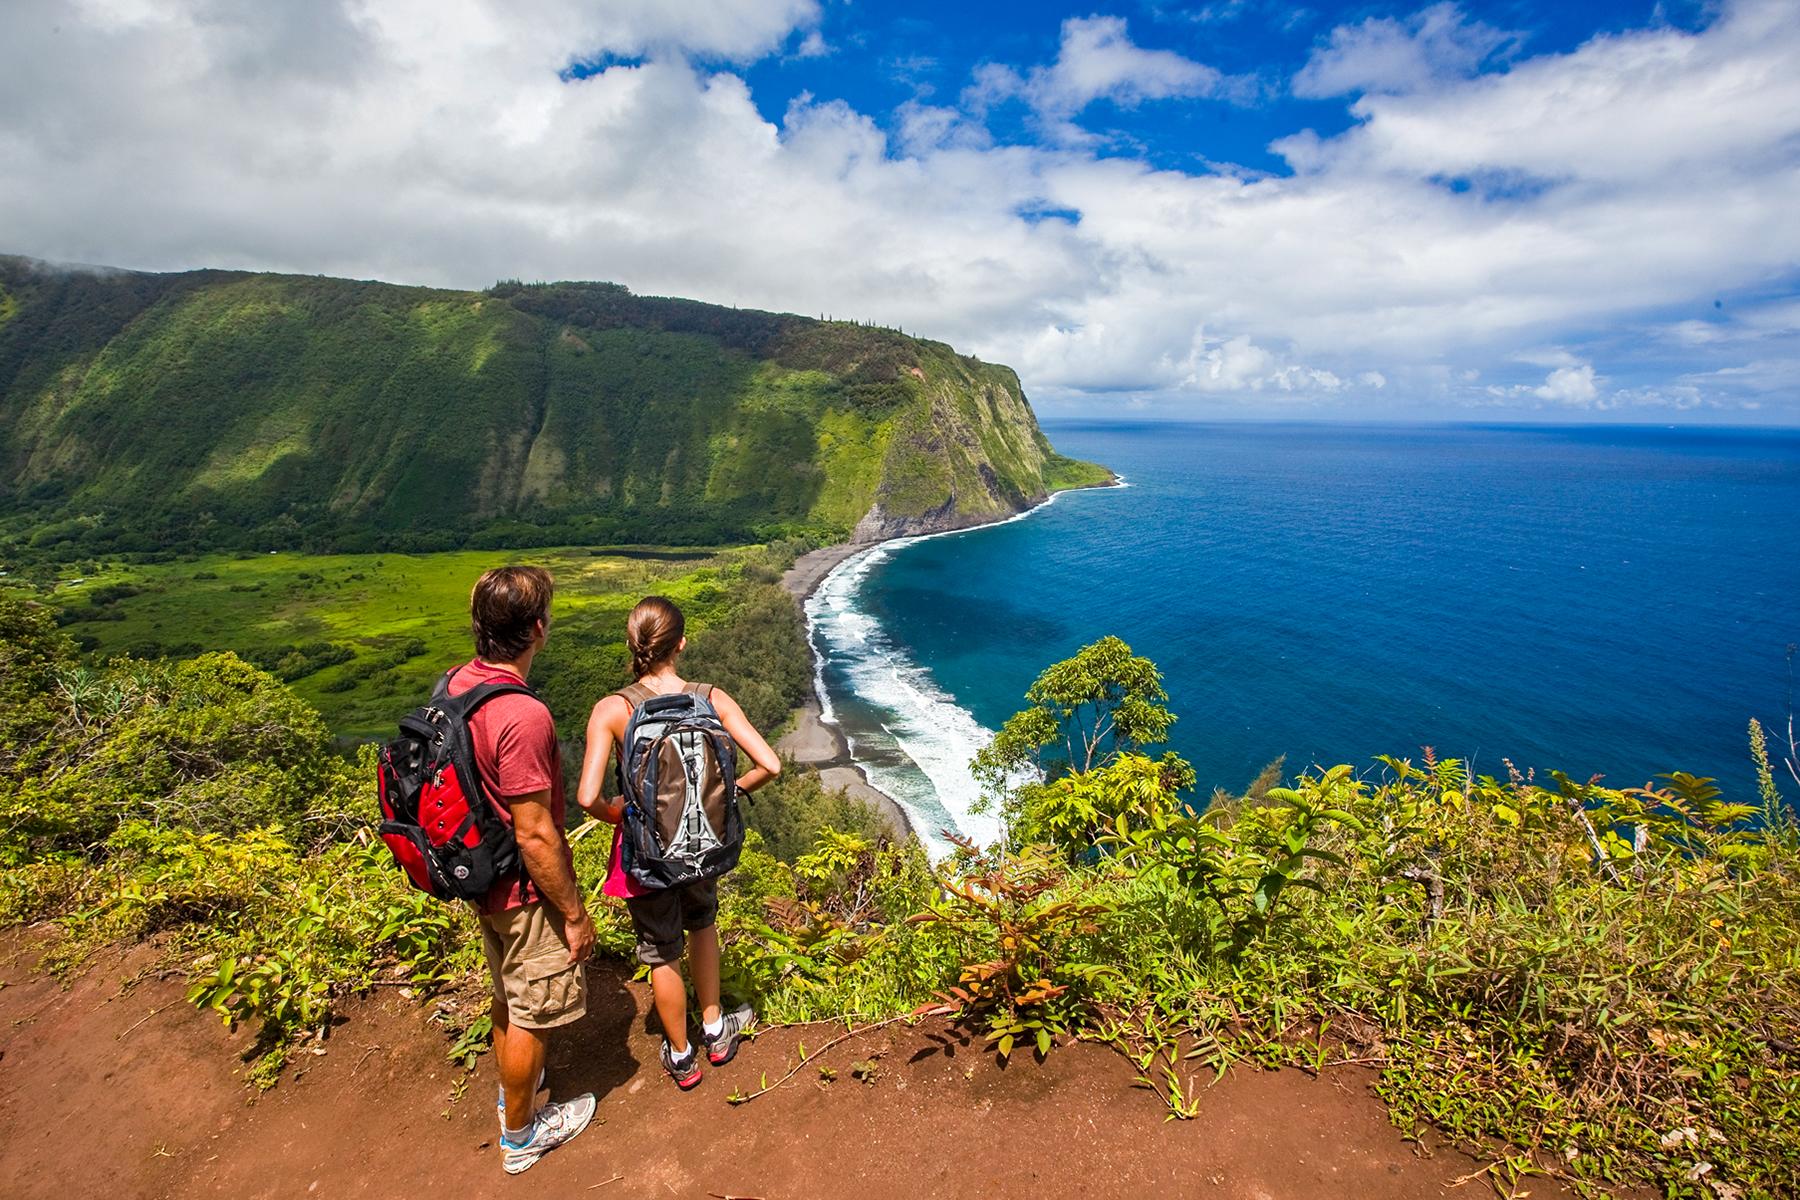 Hawaii Walking Trails